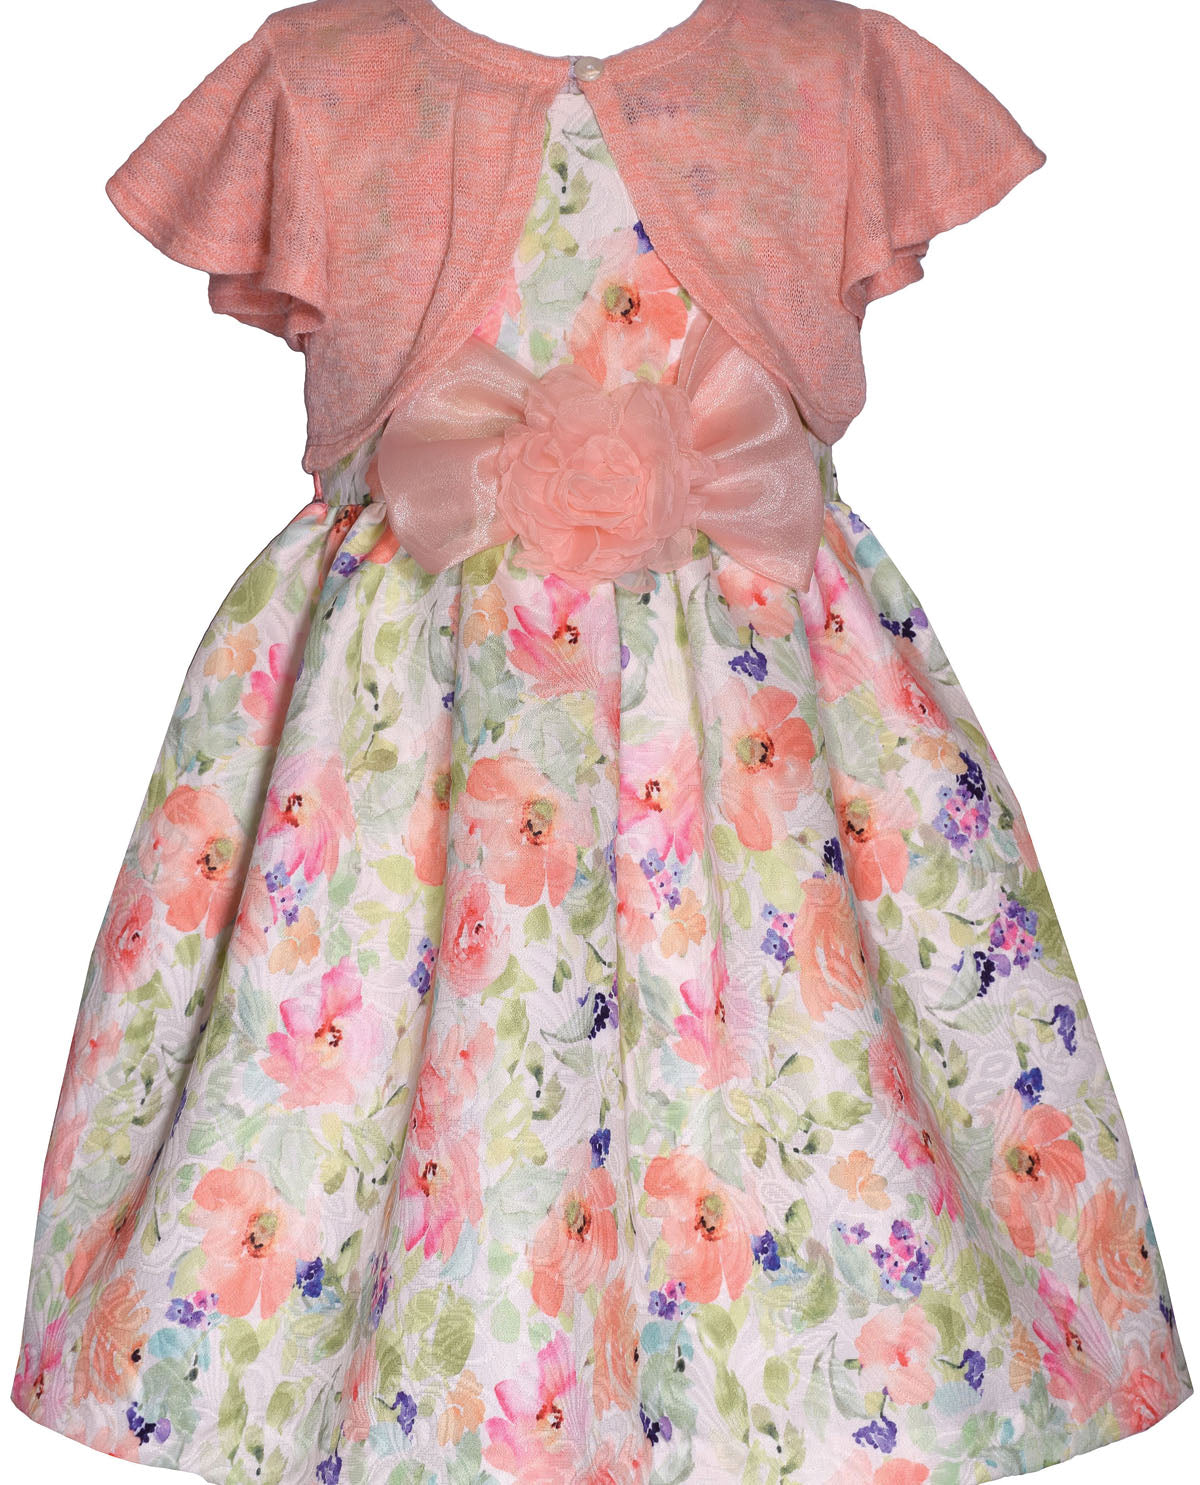 Bonnie Jean 7-16 Floral Cardigan Dress